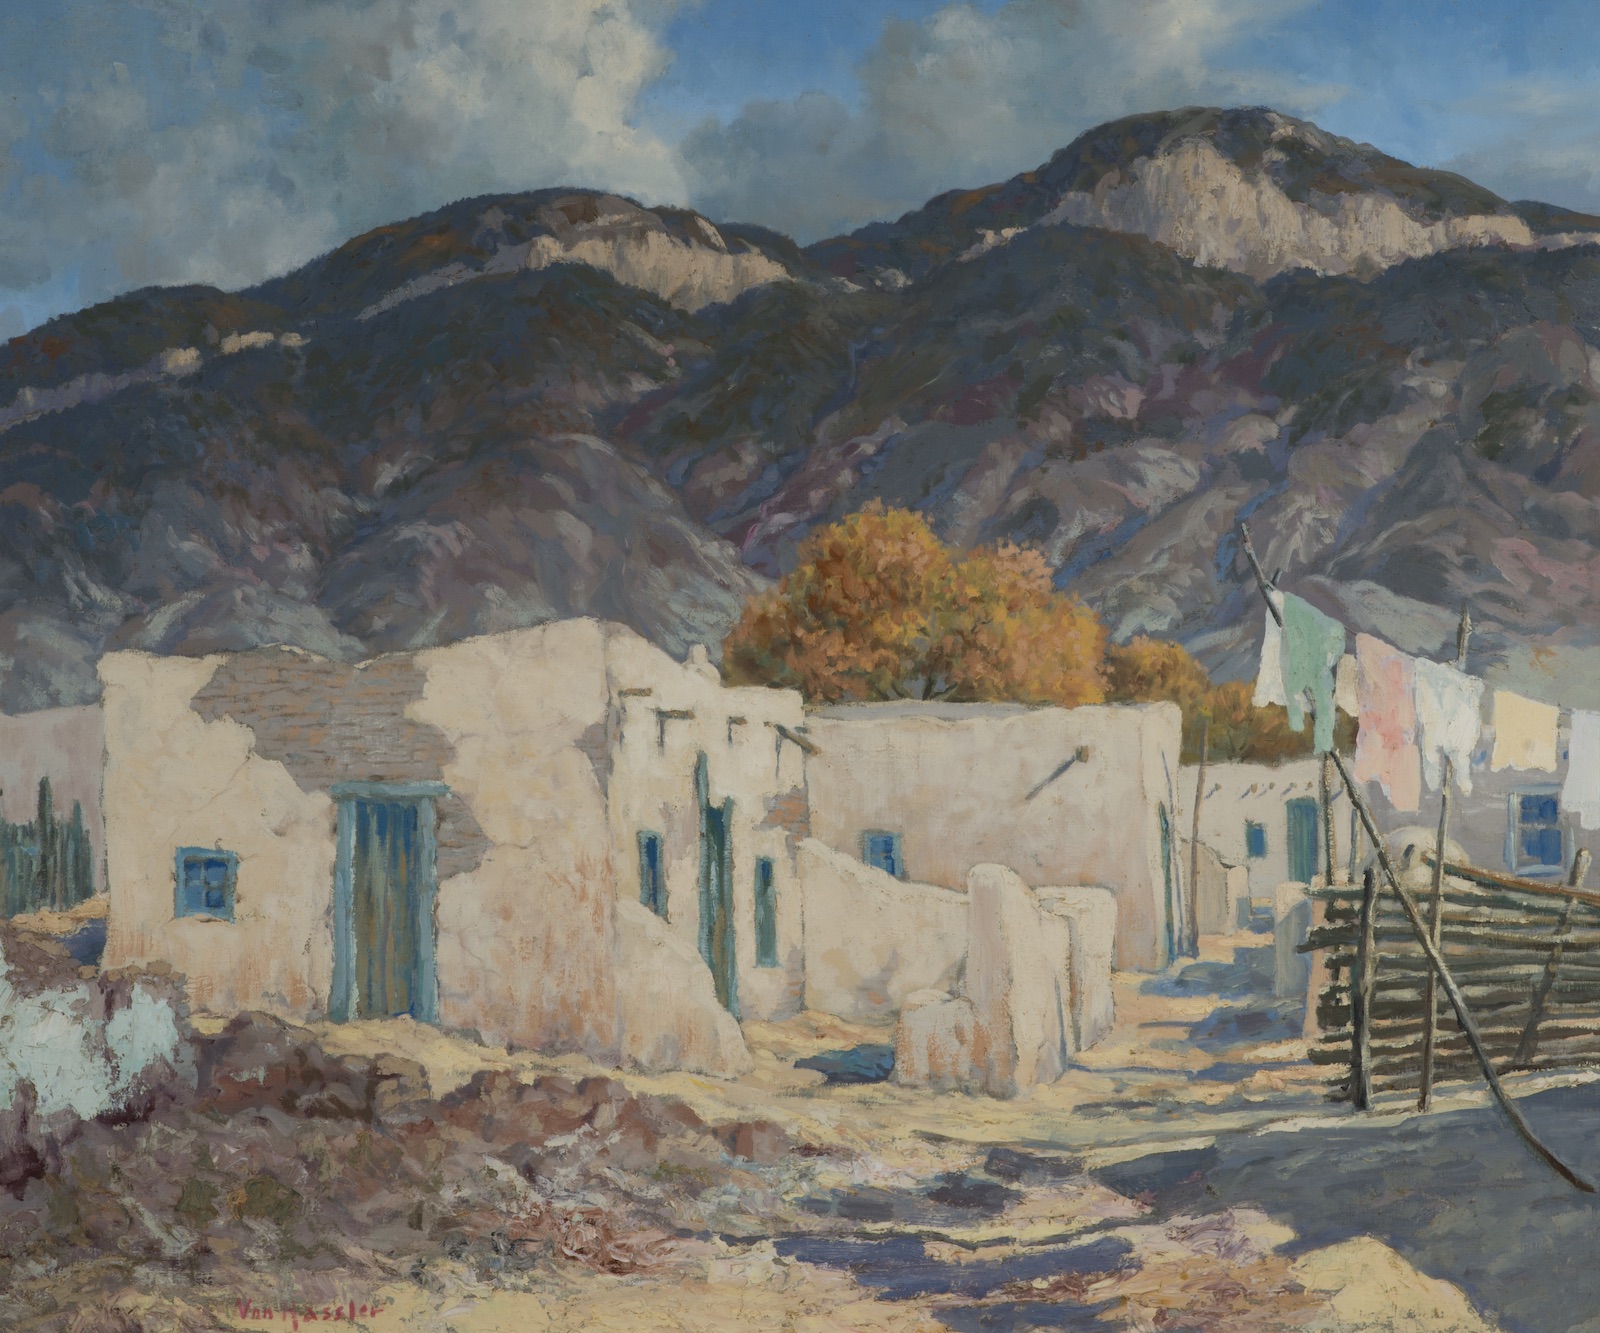 Carl Von Hassler, New Mexico Landscape